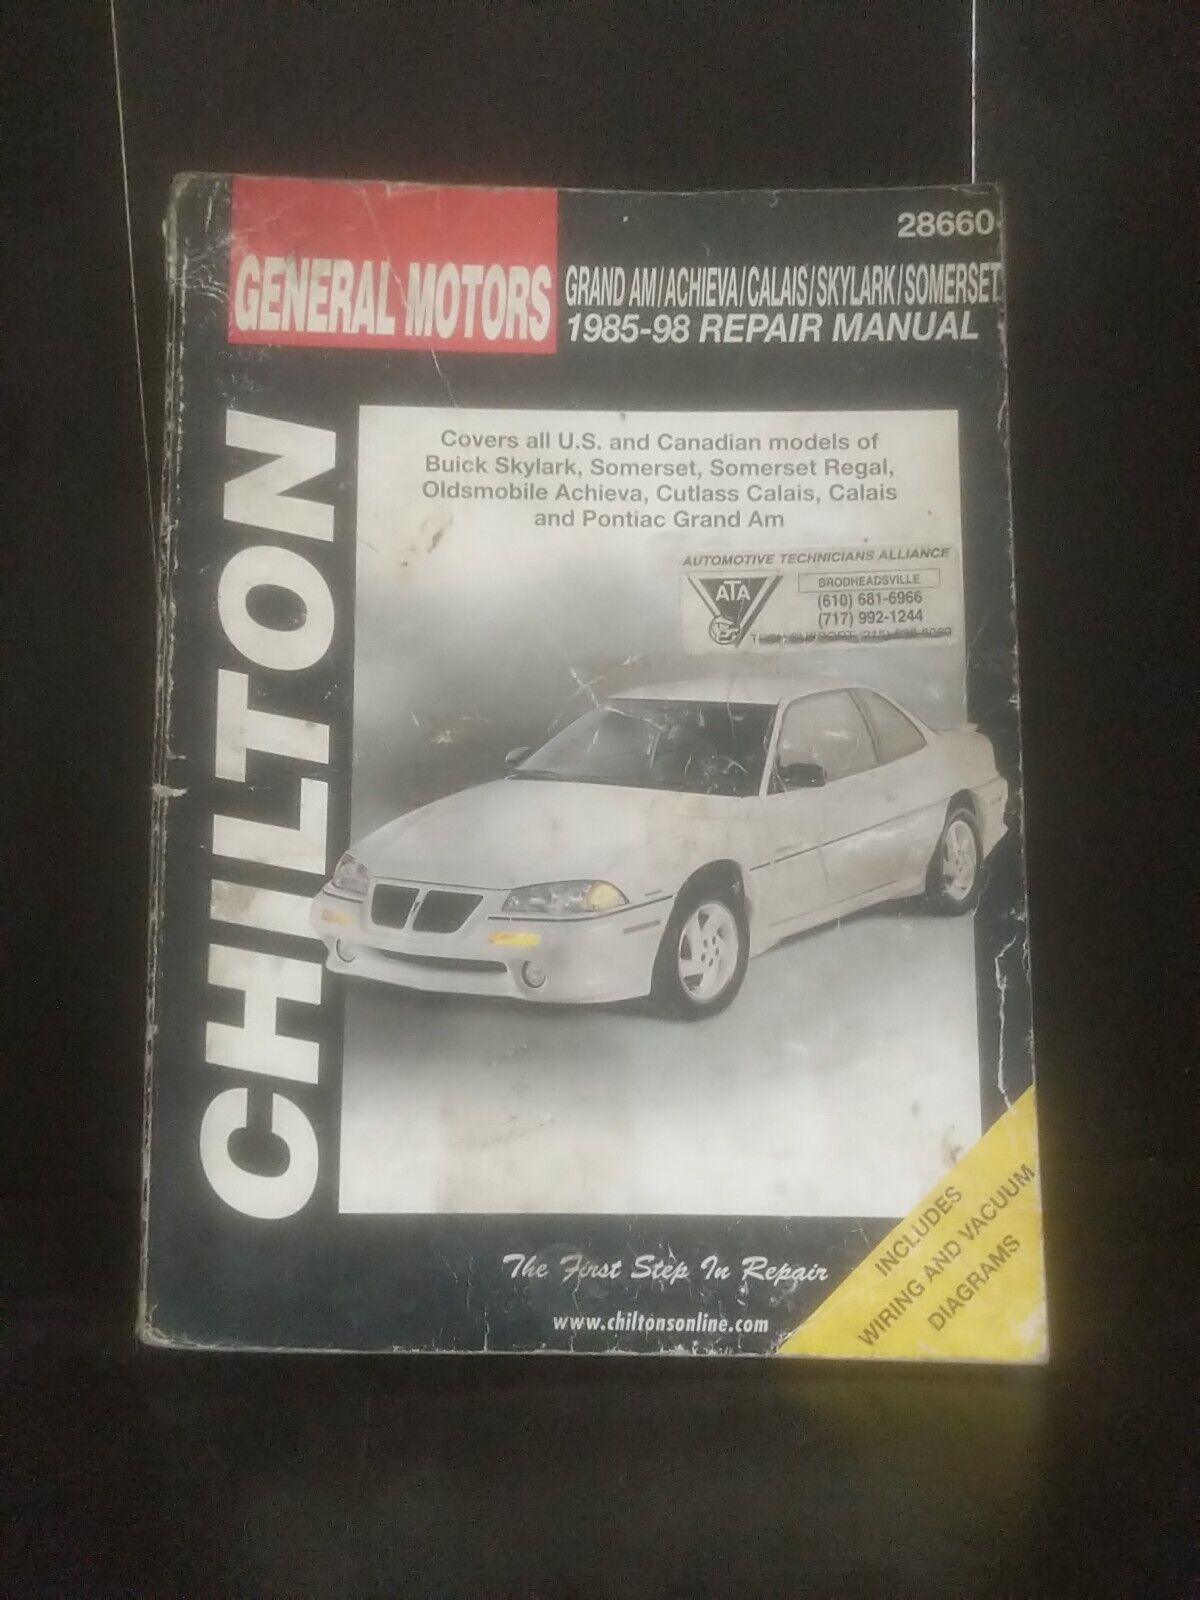 Chilton\'s General Motors Calais/Grand AM/Skylark Repair Manual 1985-1995 #28660